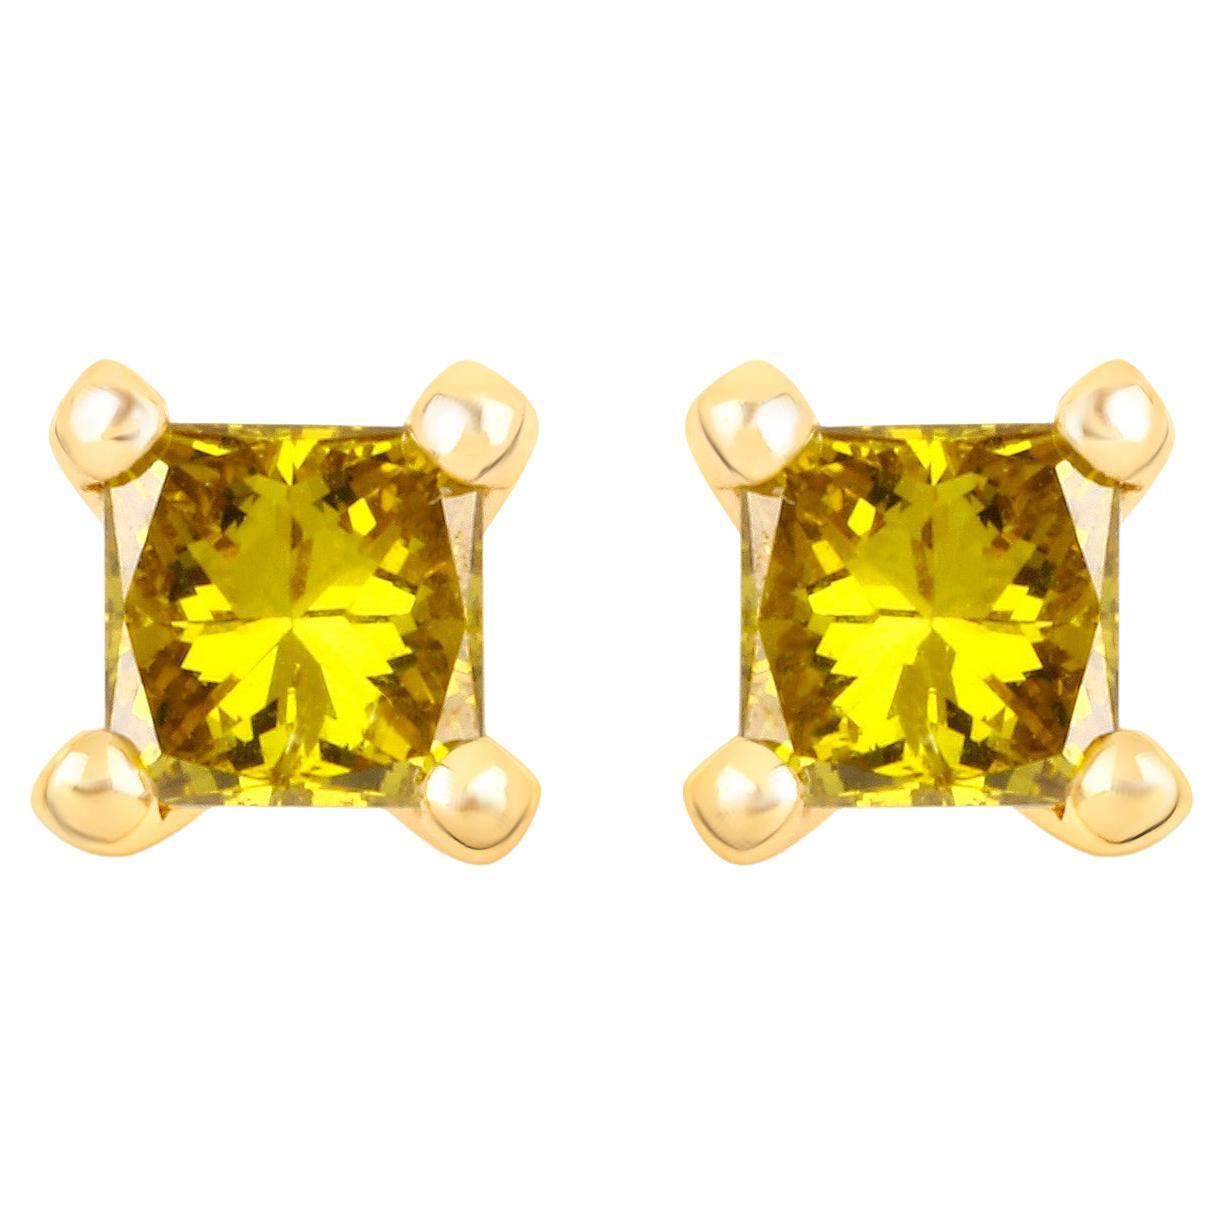 Clous d'oreilles en or jaune 14 carats avec diamants jaunes de 0,25 carat